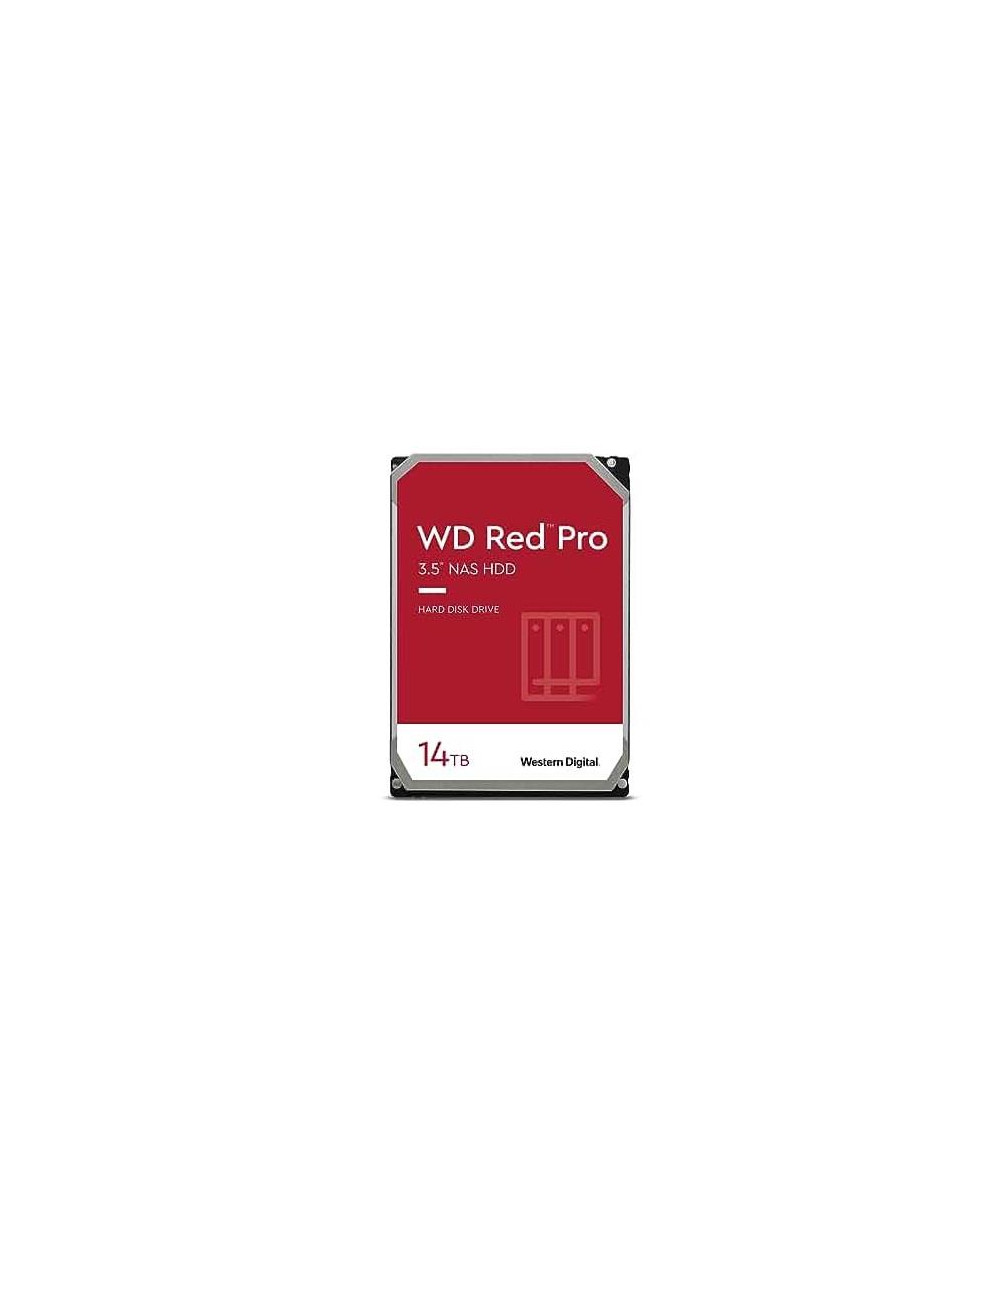 HDD|WESTERN DIGITAL|Red Pro|14TB|SATA|512 MB|7200 rpm|3,5"|WD142KFGX